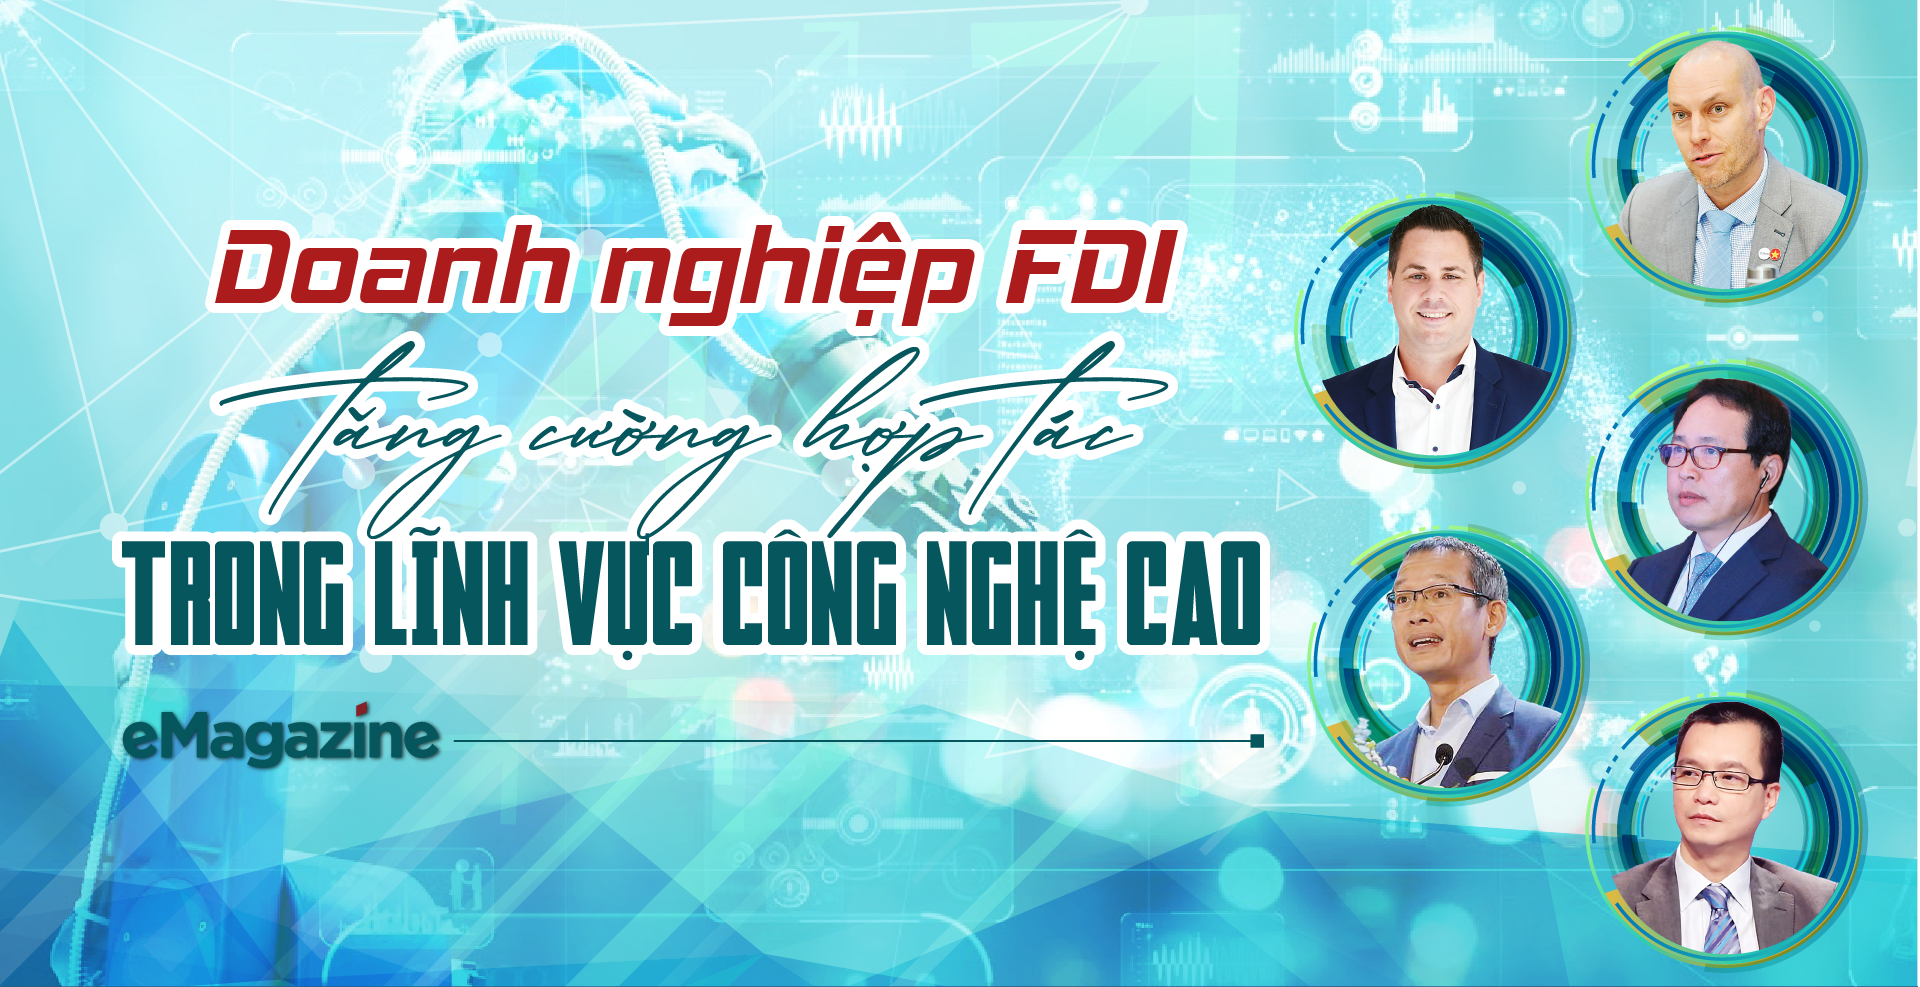 Doanh nghiệp FDI tăng cường hợp tác trong lĩnh vực công nghệ cao - Ảnh 1